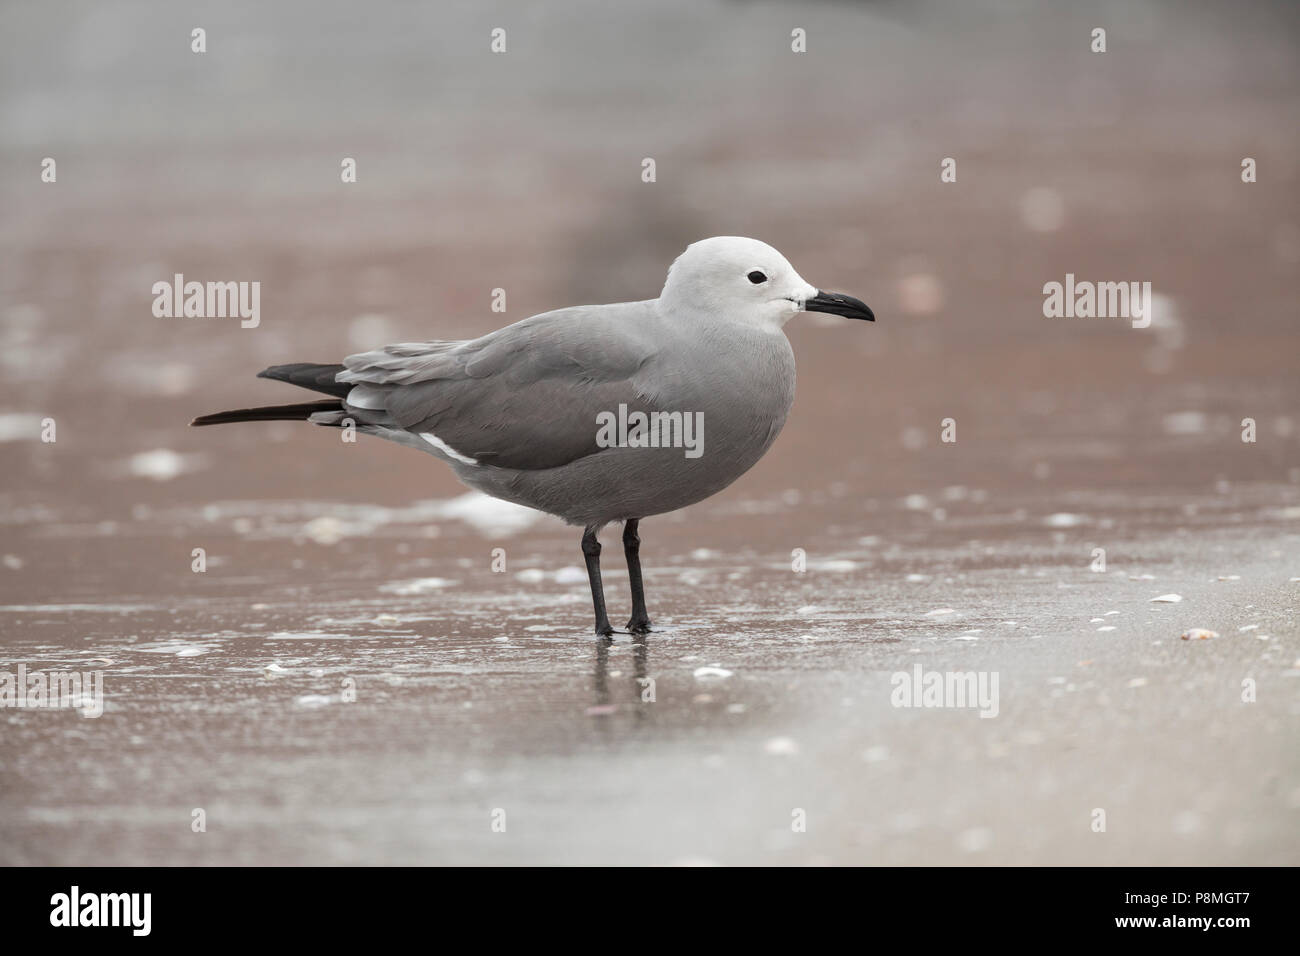 Gray Gull standing on beach Stock Photo